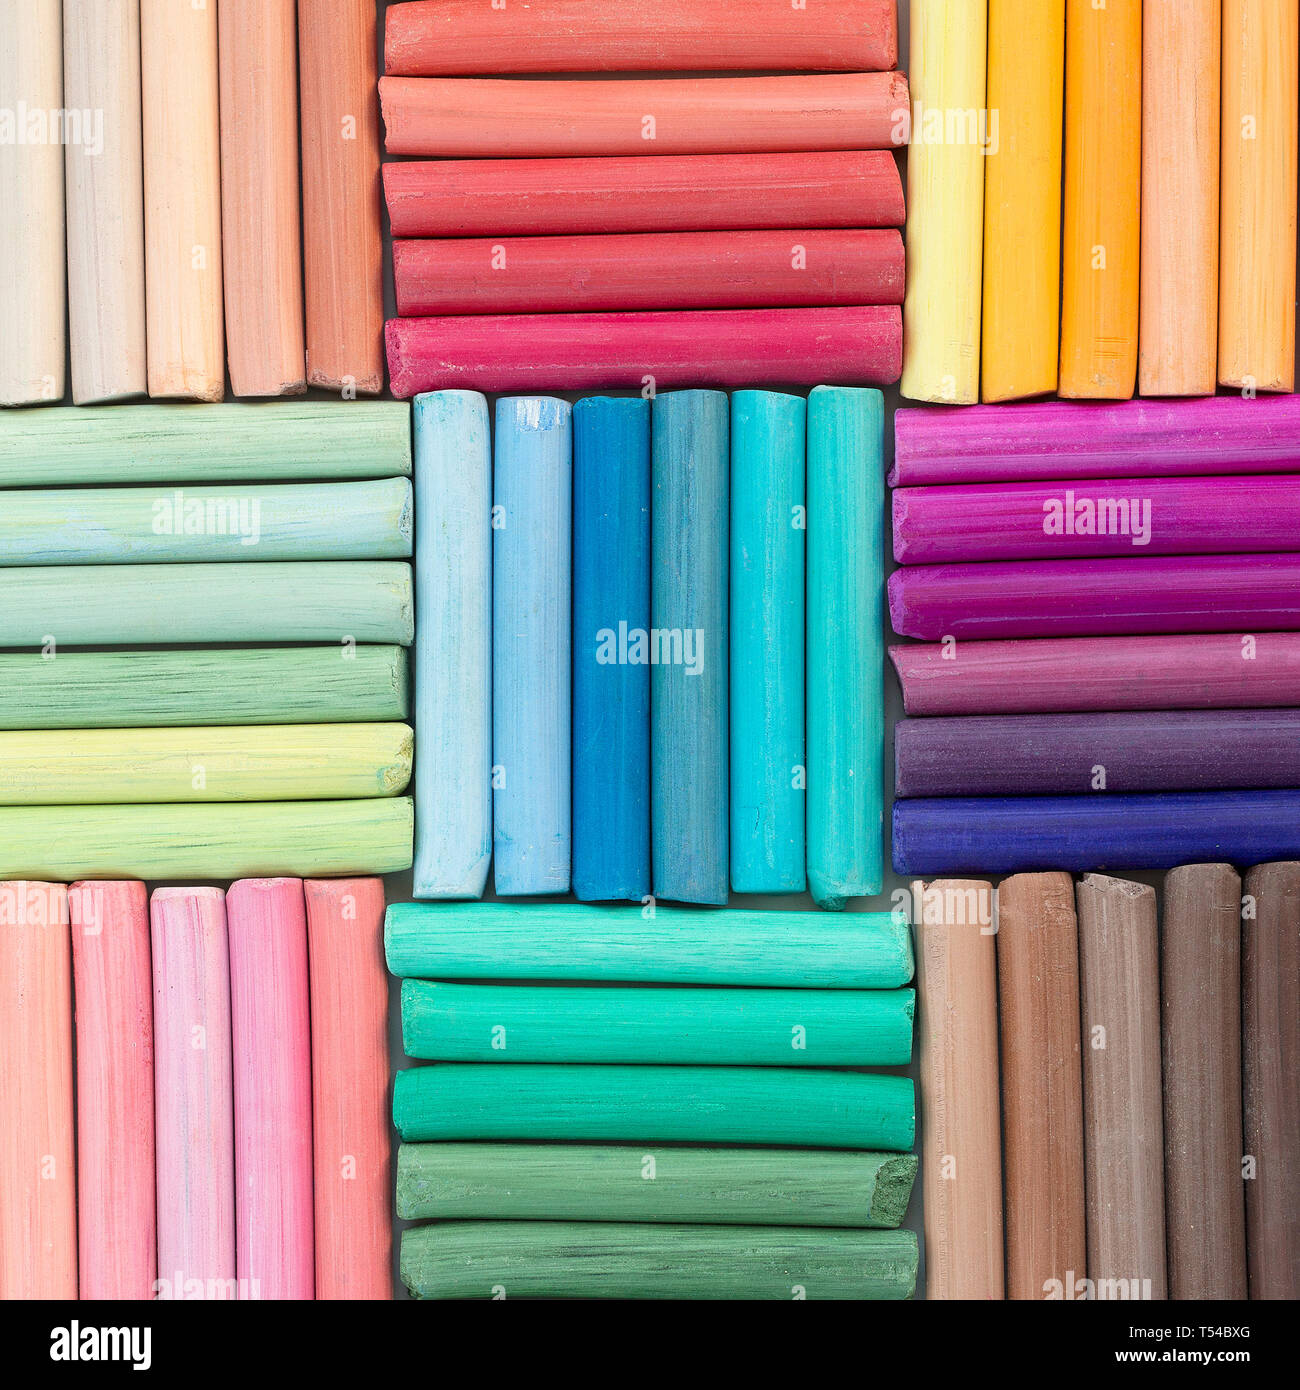 Rainbow matite di colore pastello in righe come sfondo. Immagine quadrata Foto Stock